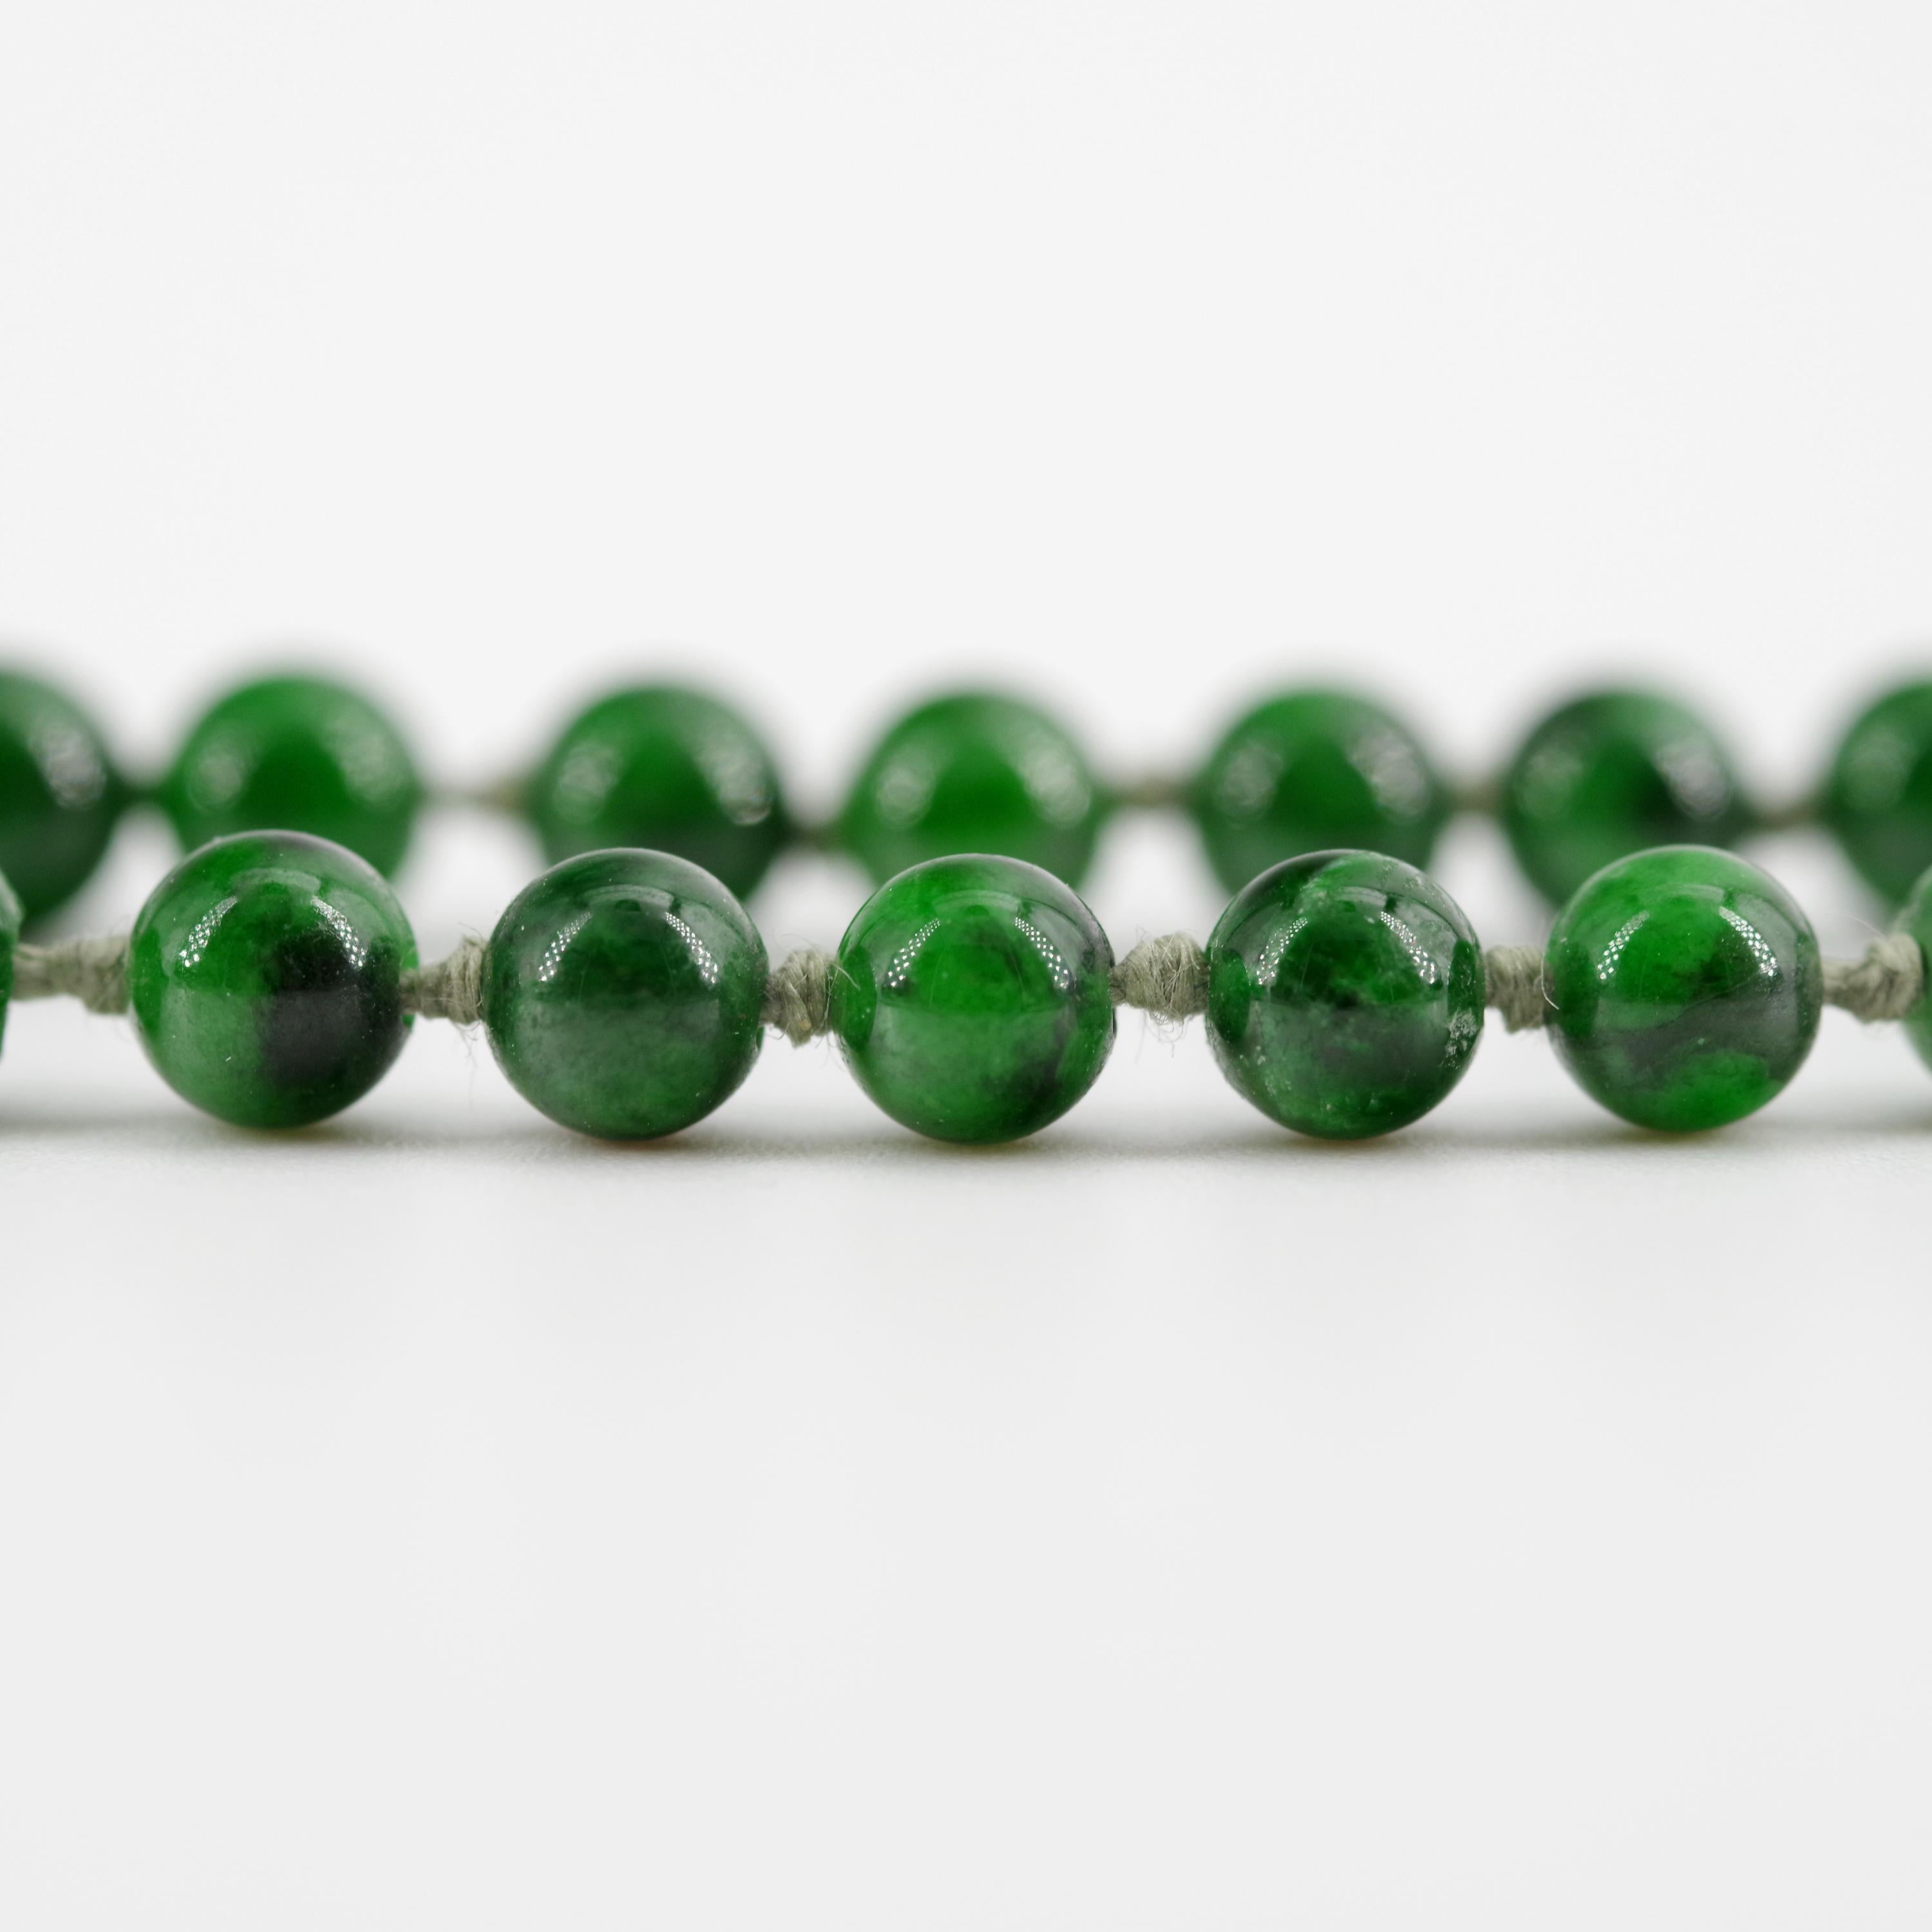 Kosmochlor-Jadeite Jade Beaded Necklace or Bracelet 1